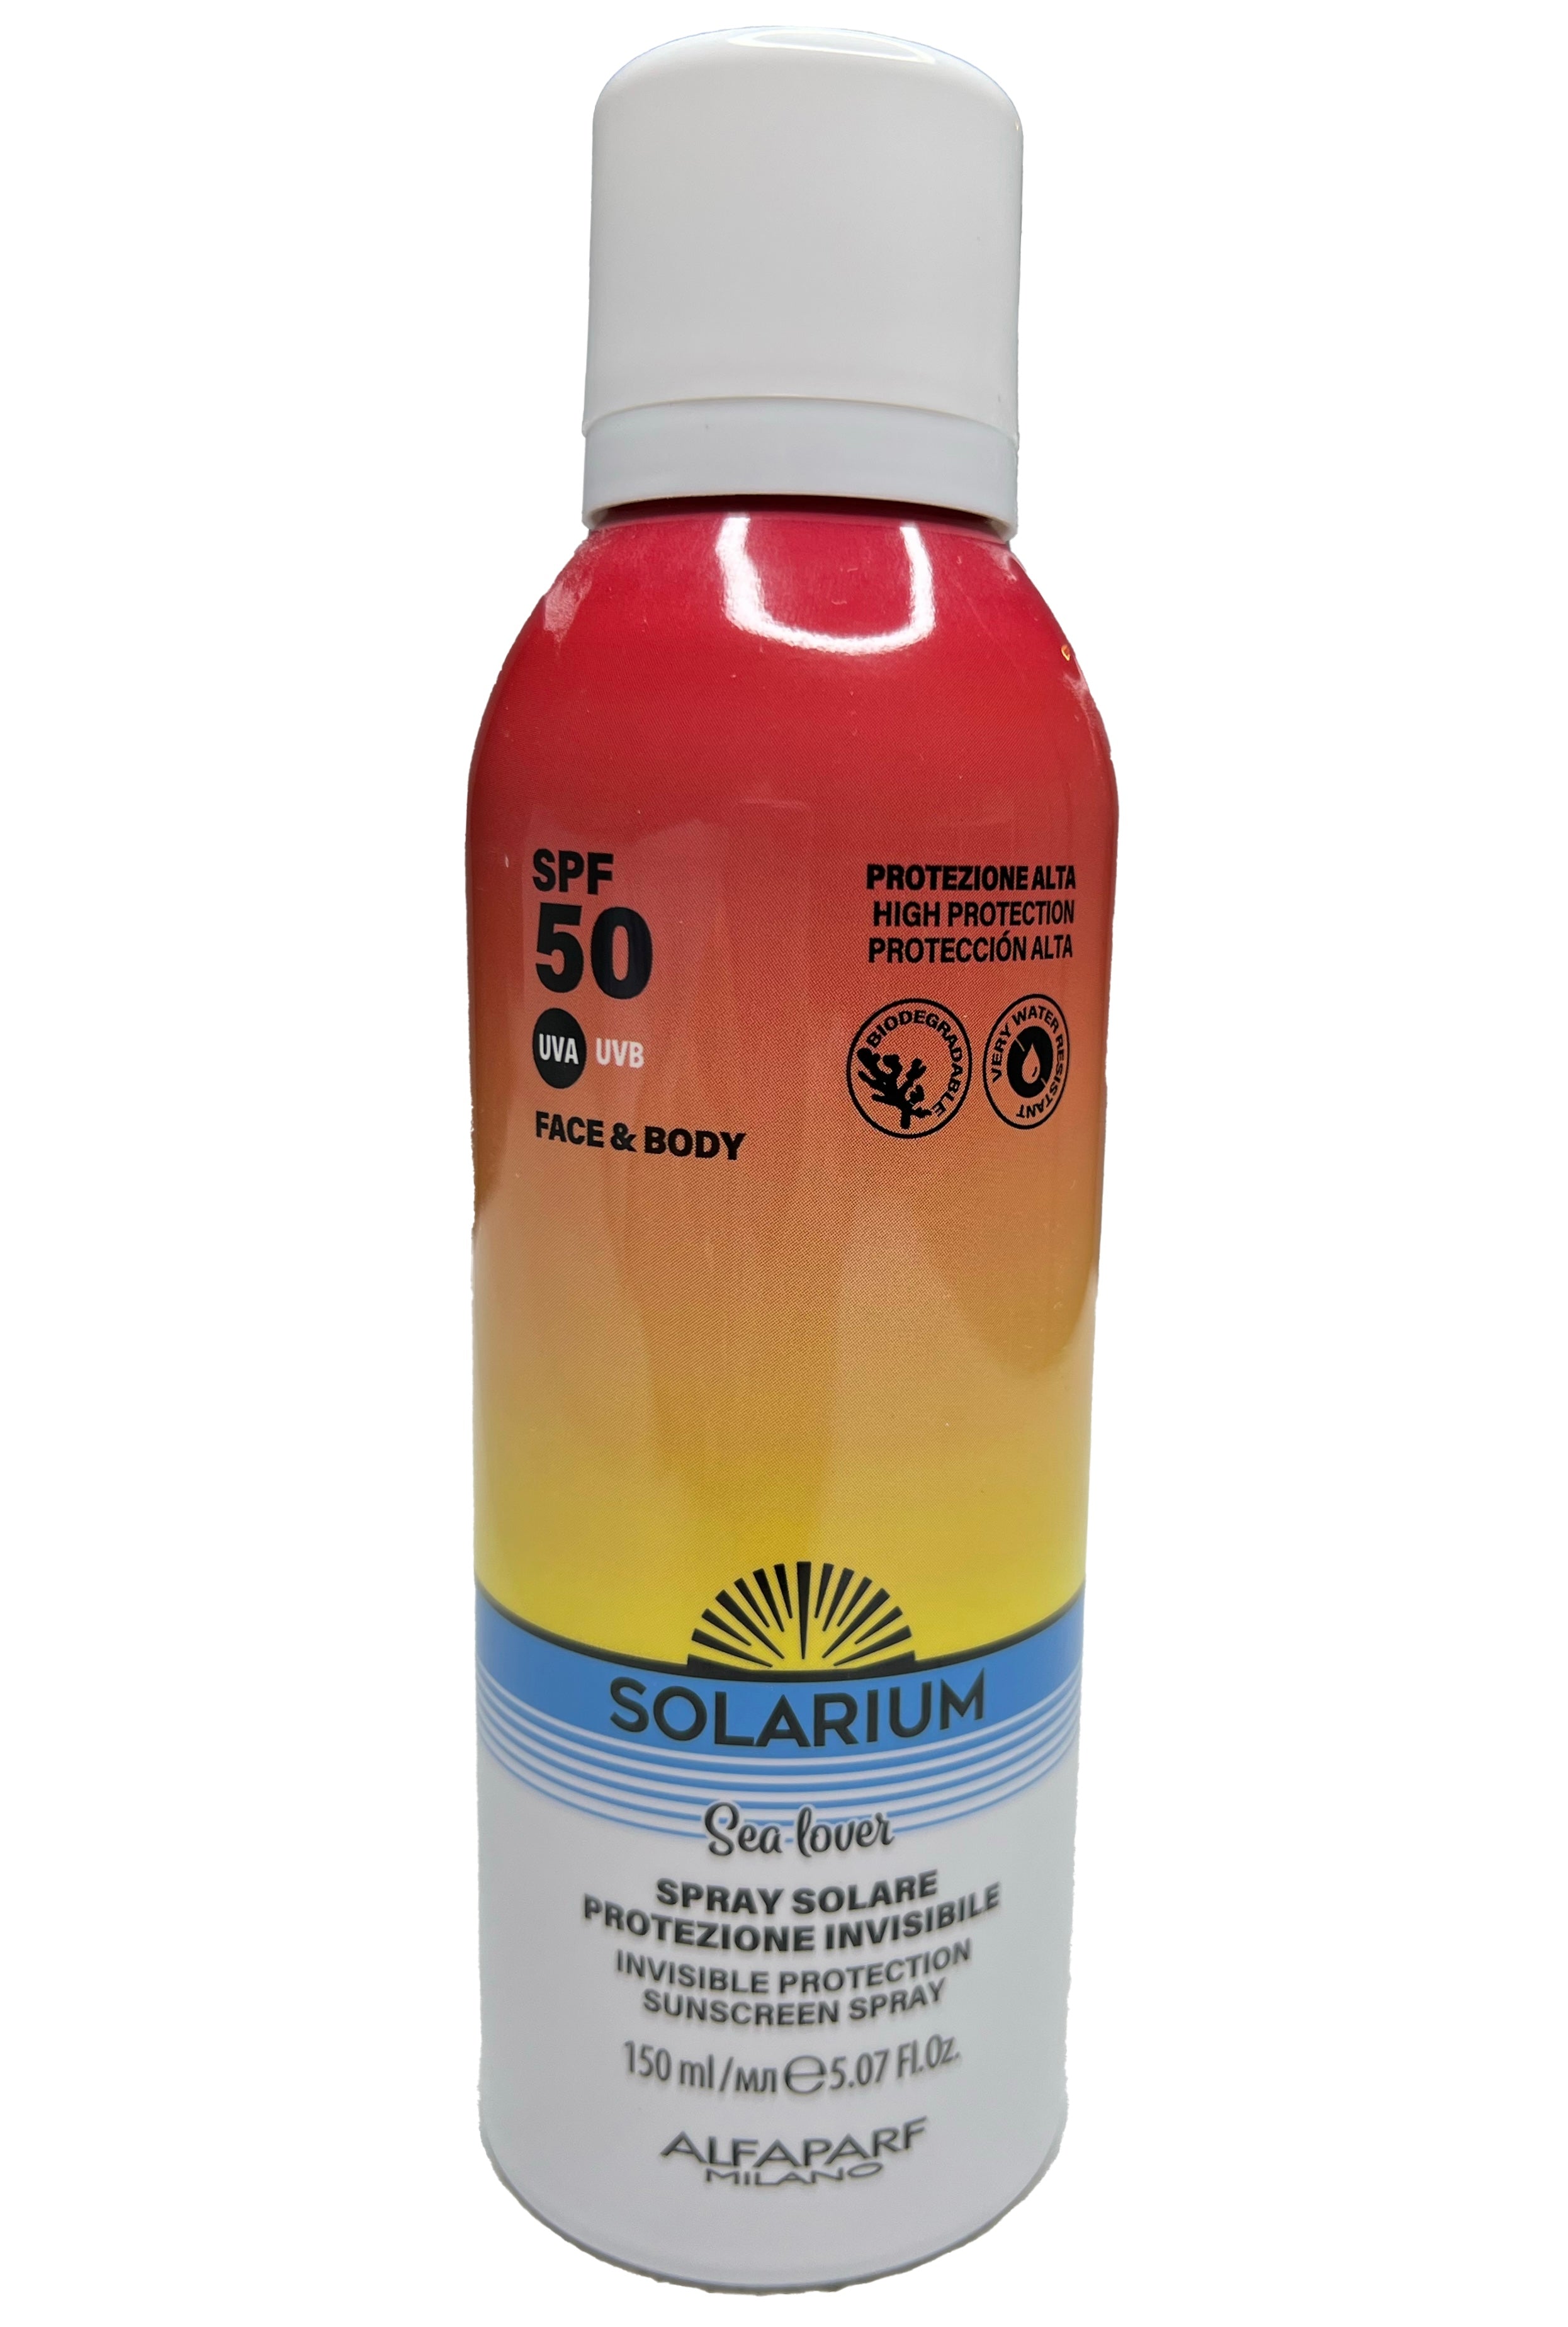 Spray solare protezione invisibile spf 50